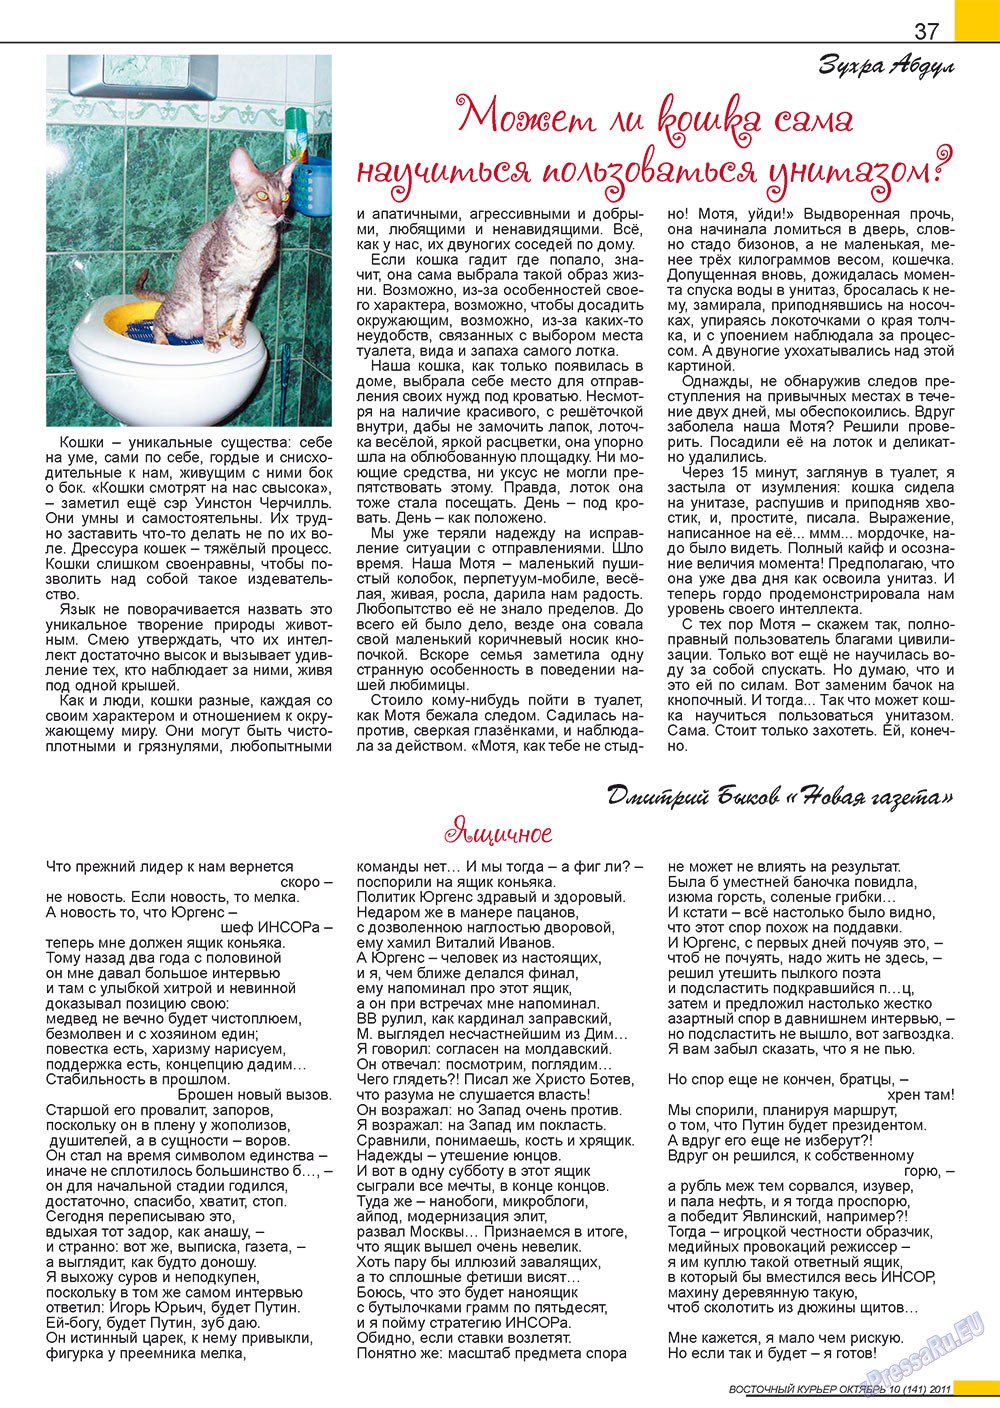 Восточный курьер, журнал. 2011 №10 стр.37